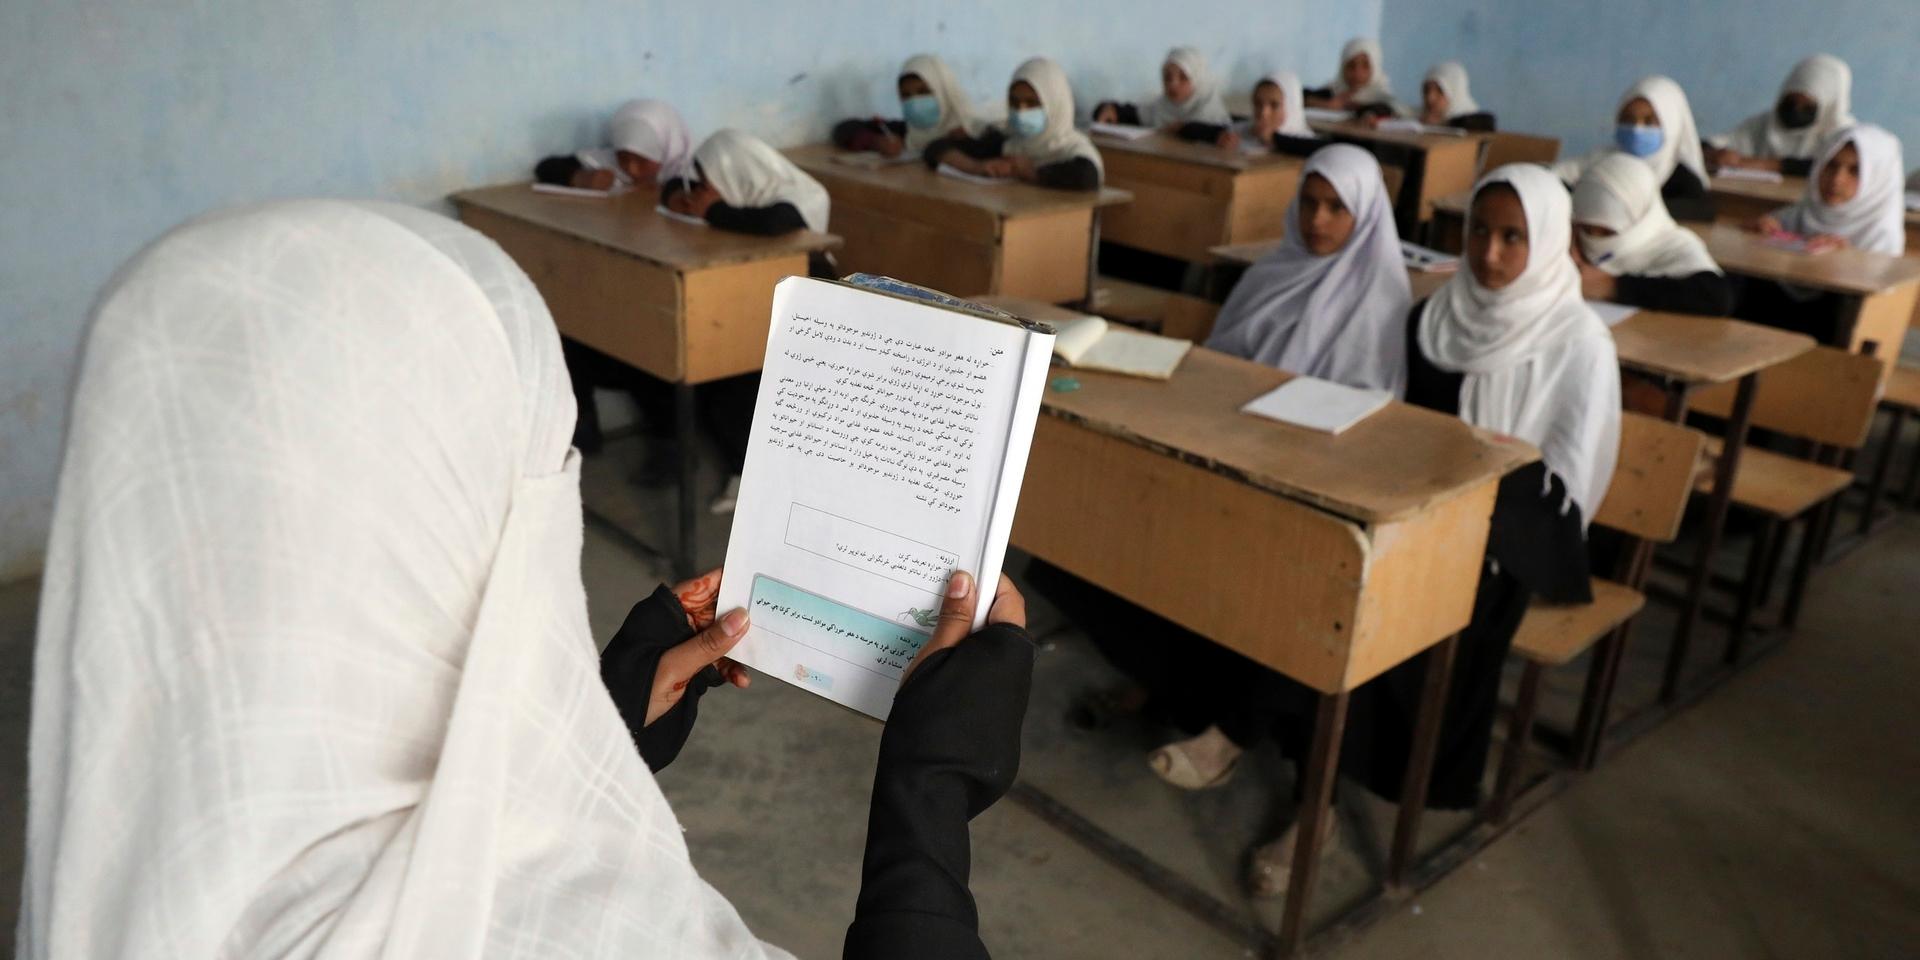 I Afghanistan har pandemin lett till att skolorna varit stängda i över sju månader 2020 och 2021. På bilden ses flickor i en skola i Kabul.